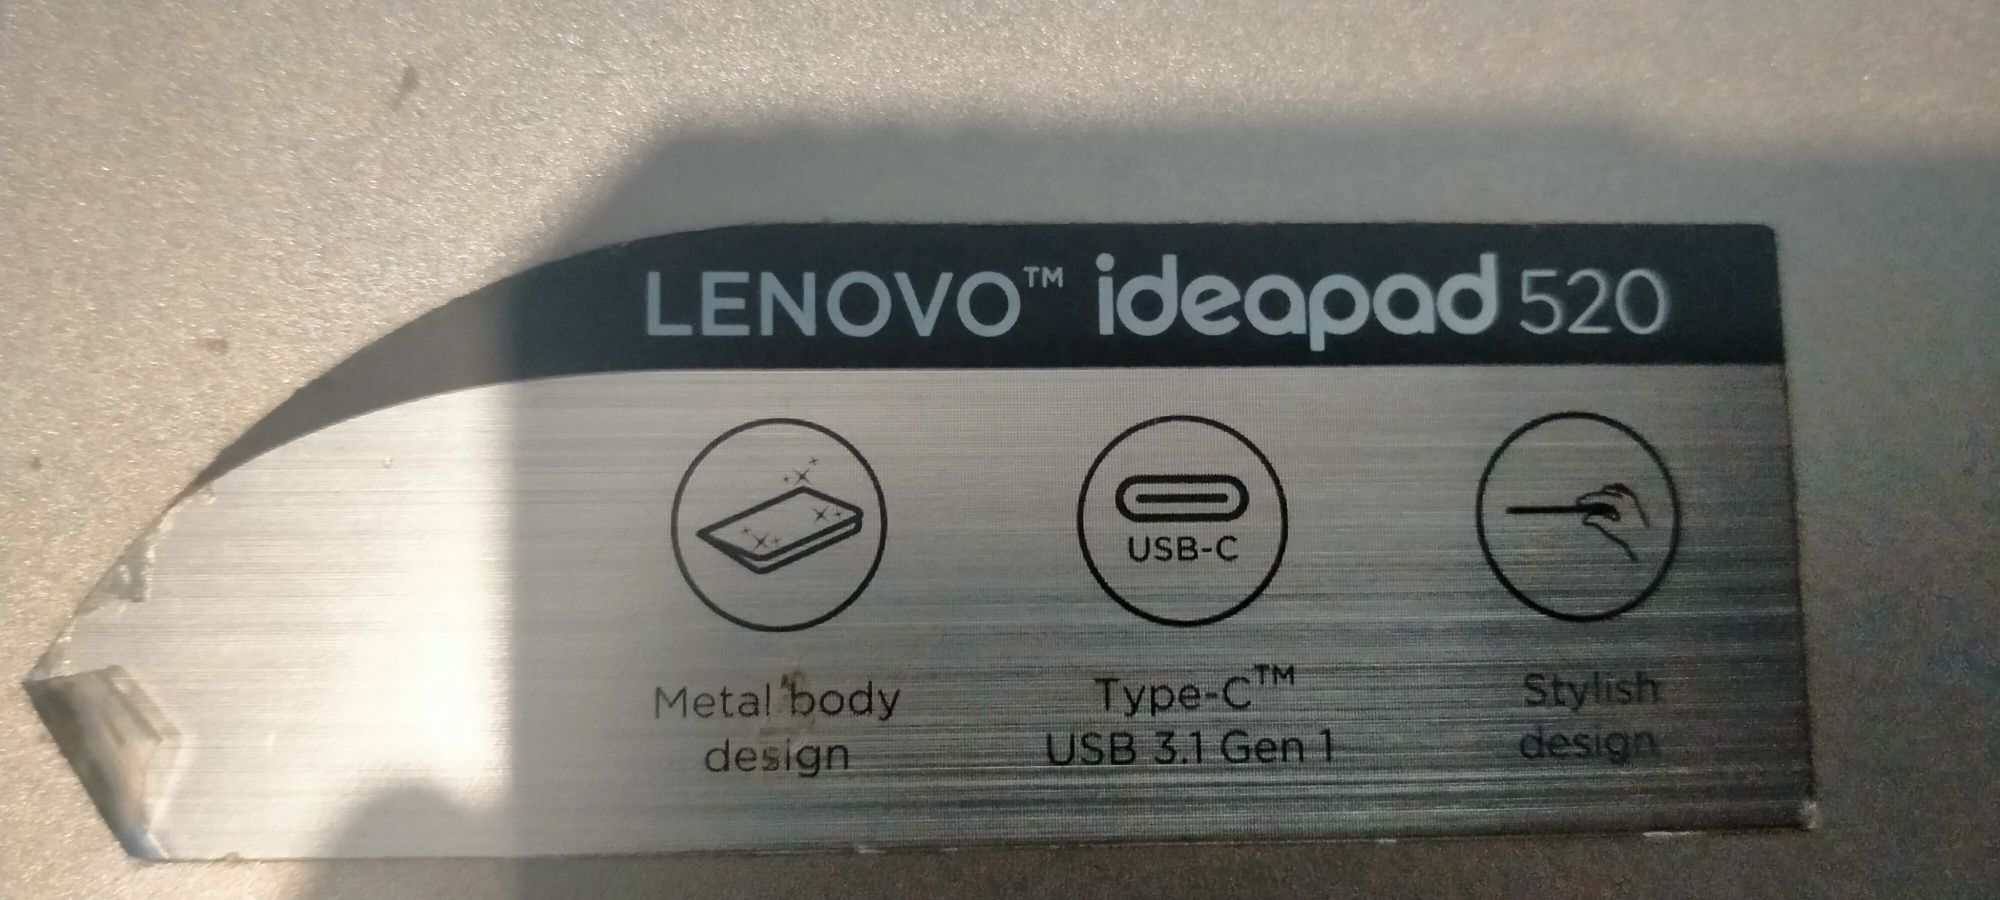 Lenovo Ideapad 520